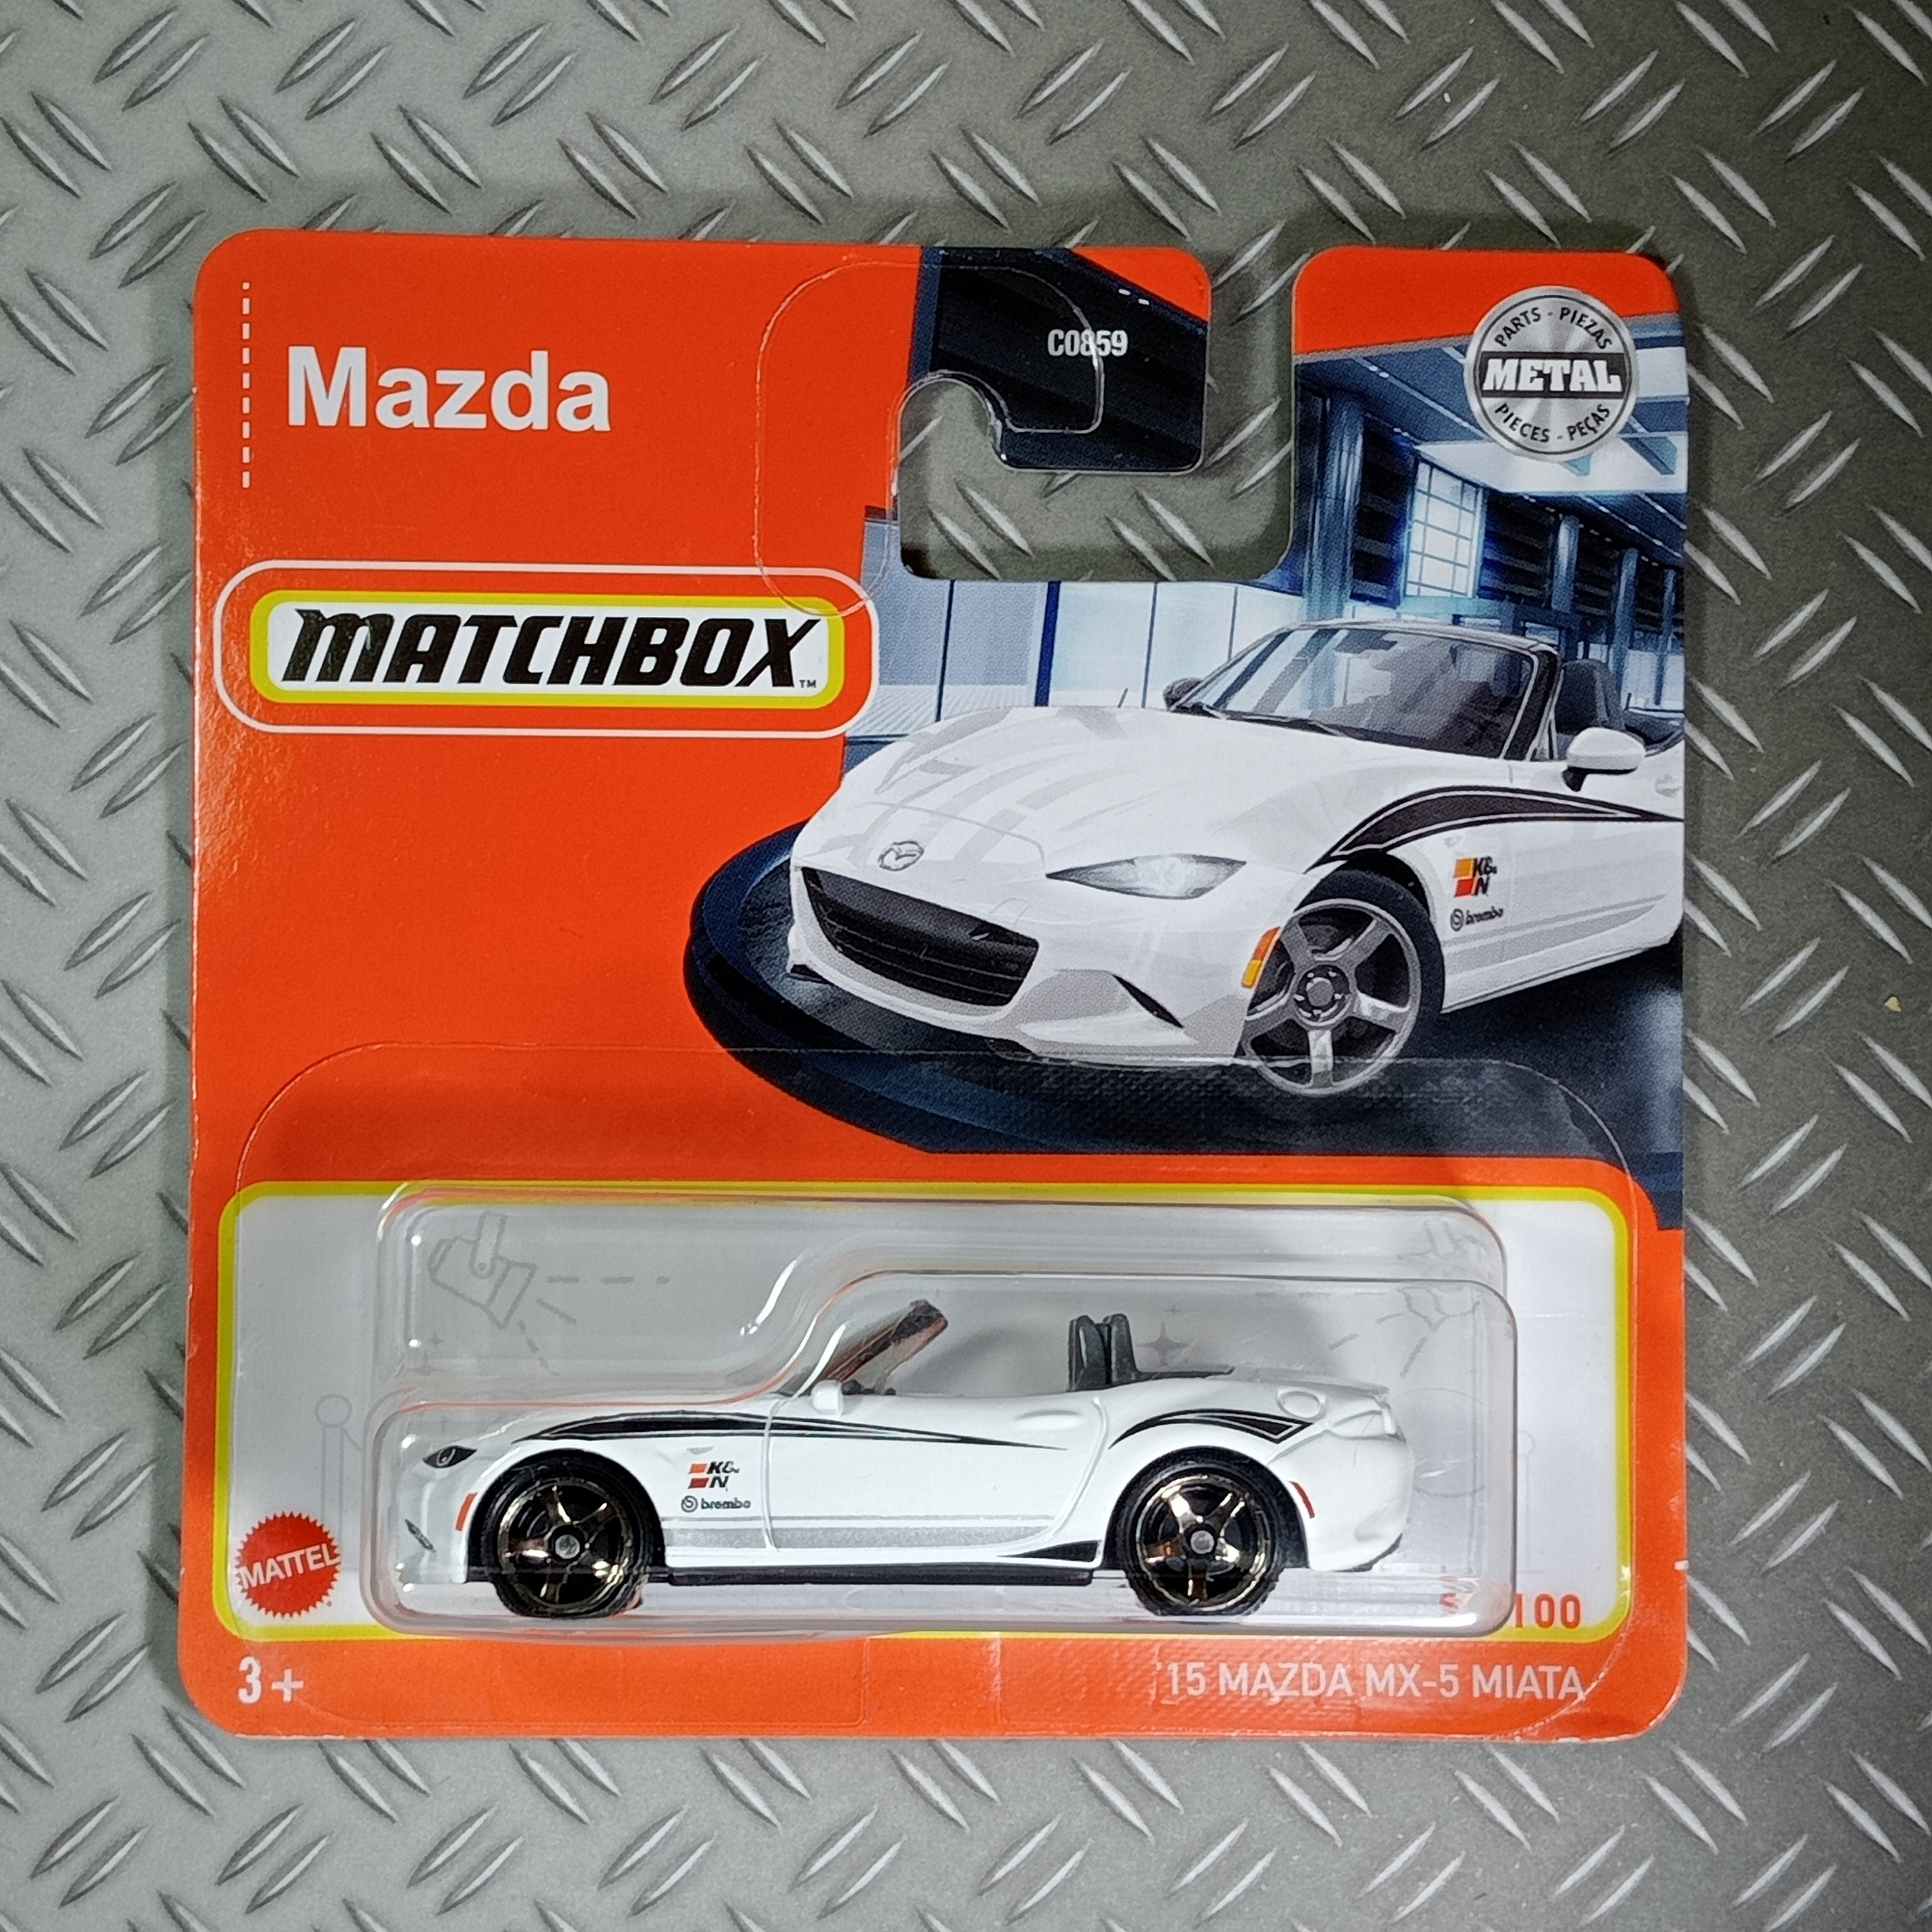 814 7) Modellauto - Matchbox - Mazda mx5 miata nd jdm Japan import Tuning  Motorsport rennwagen Sportwagen Legende collectors superfast real rider, €  18,- (1230 Wien) - willhaben